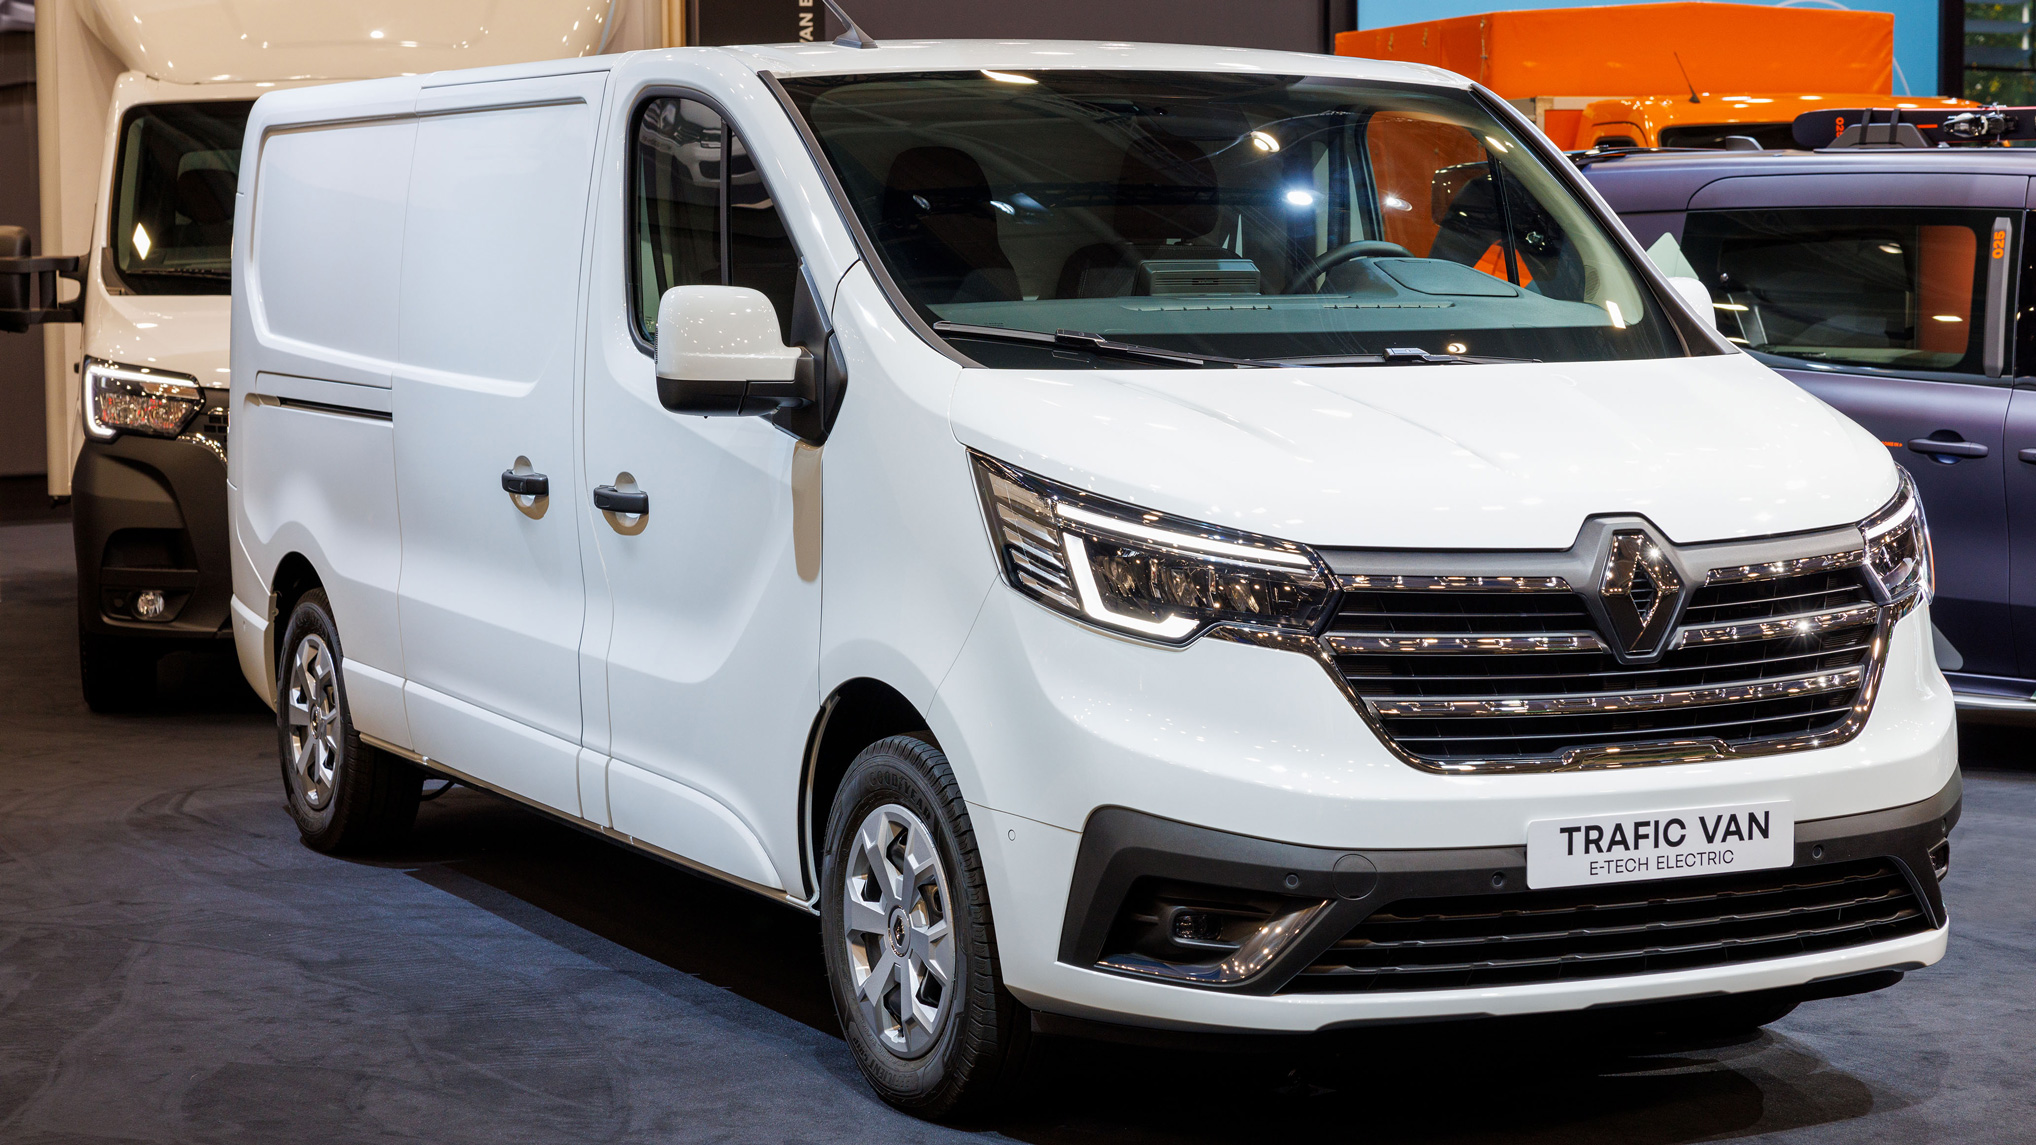 De nieuwe elektrische minibus Renault Trafic E-TECH wordt voorgesteld: